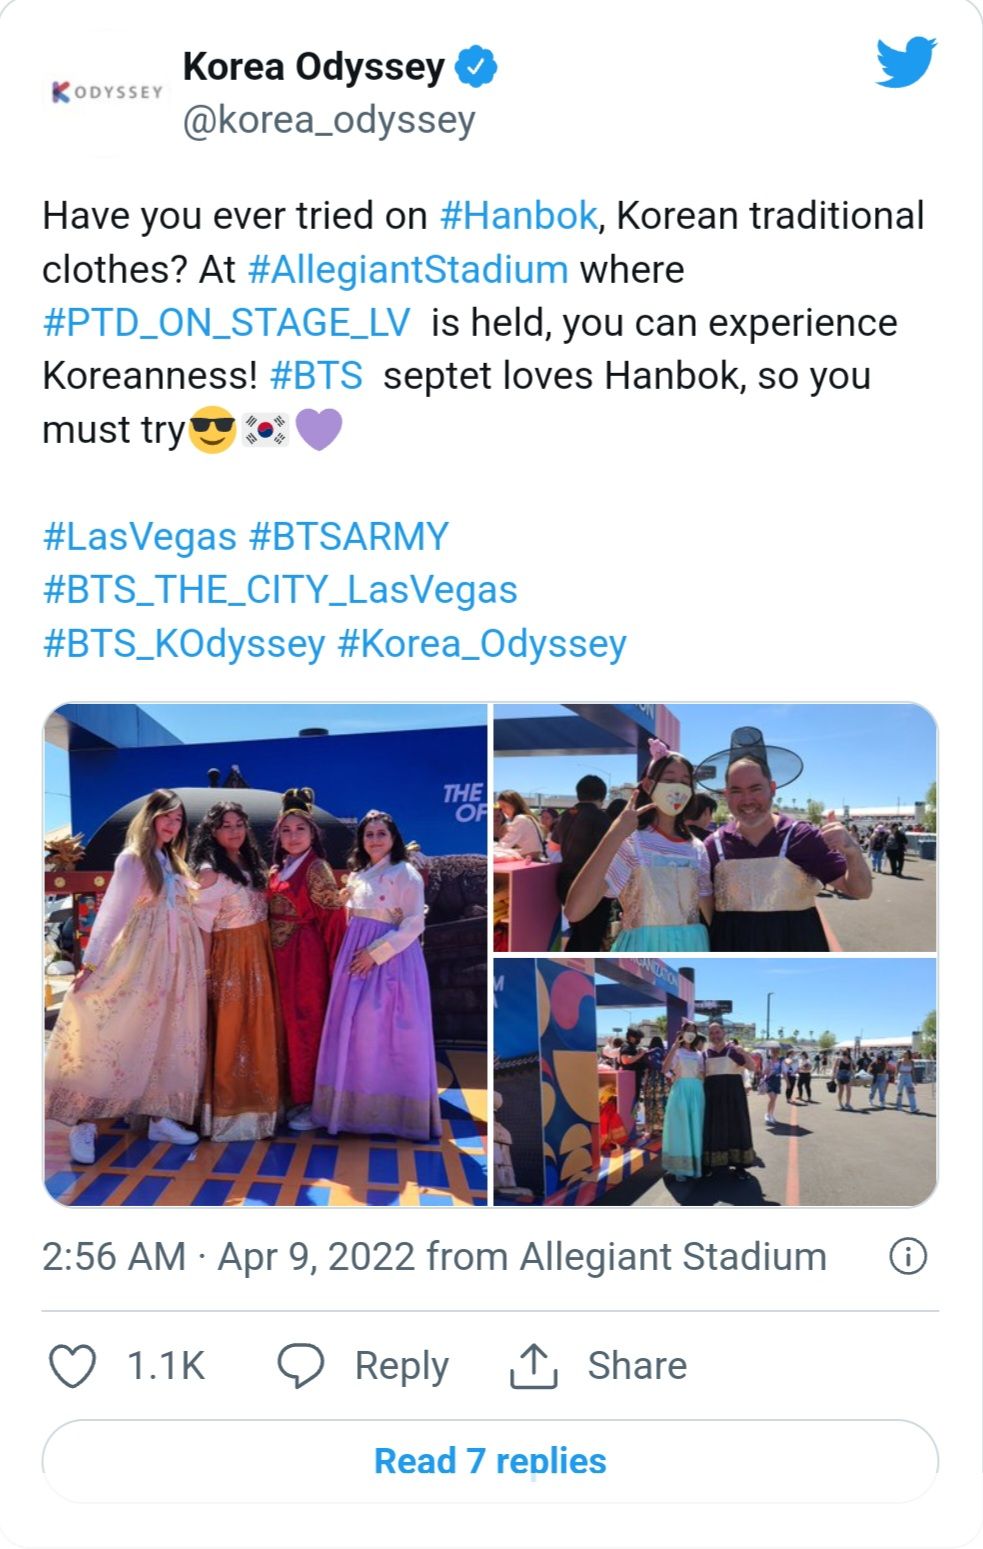 Pengunjung konser BTS Las Vegas mencoba hanbok di zona hanbok./Twitter/@korea_odyssey